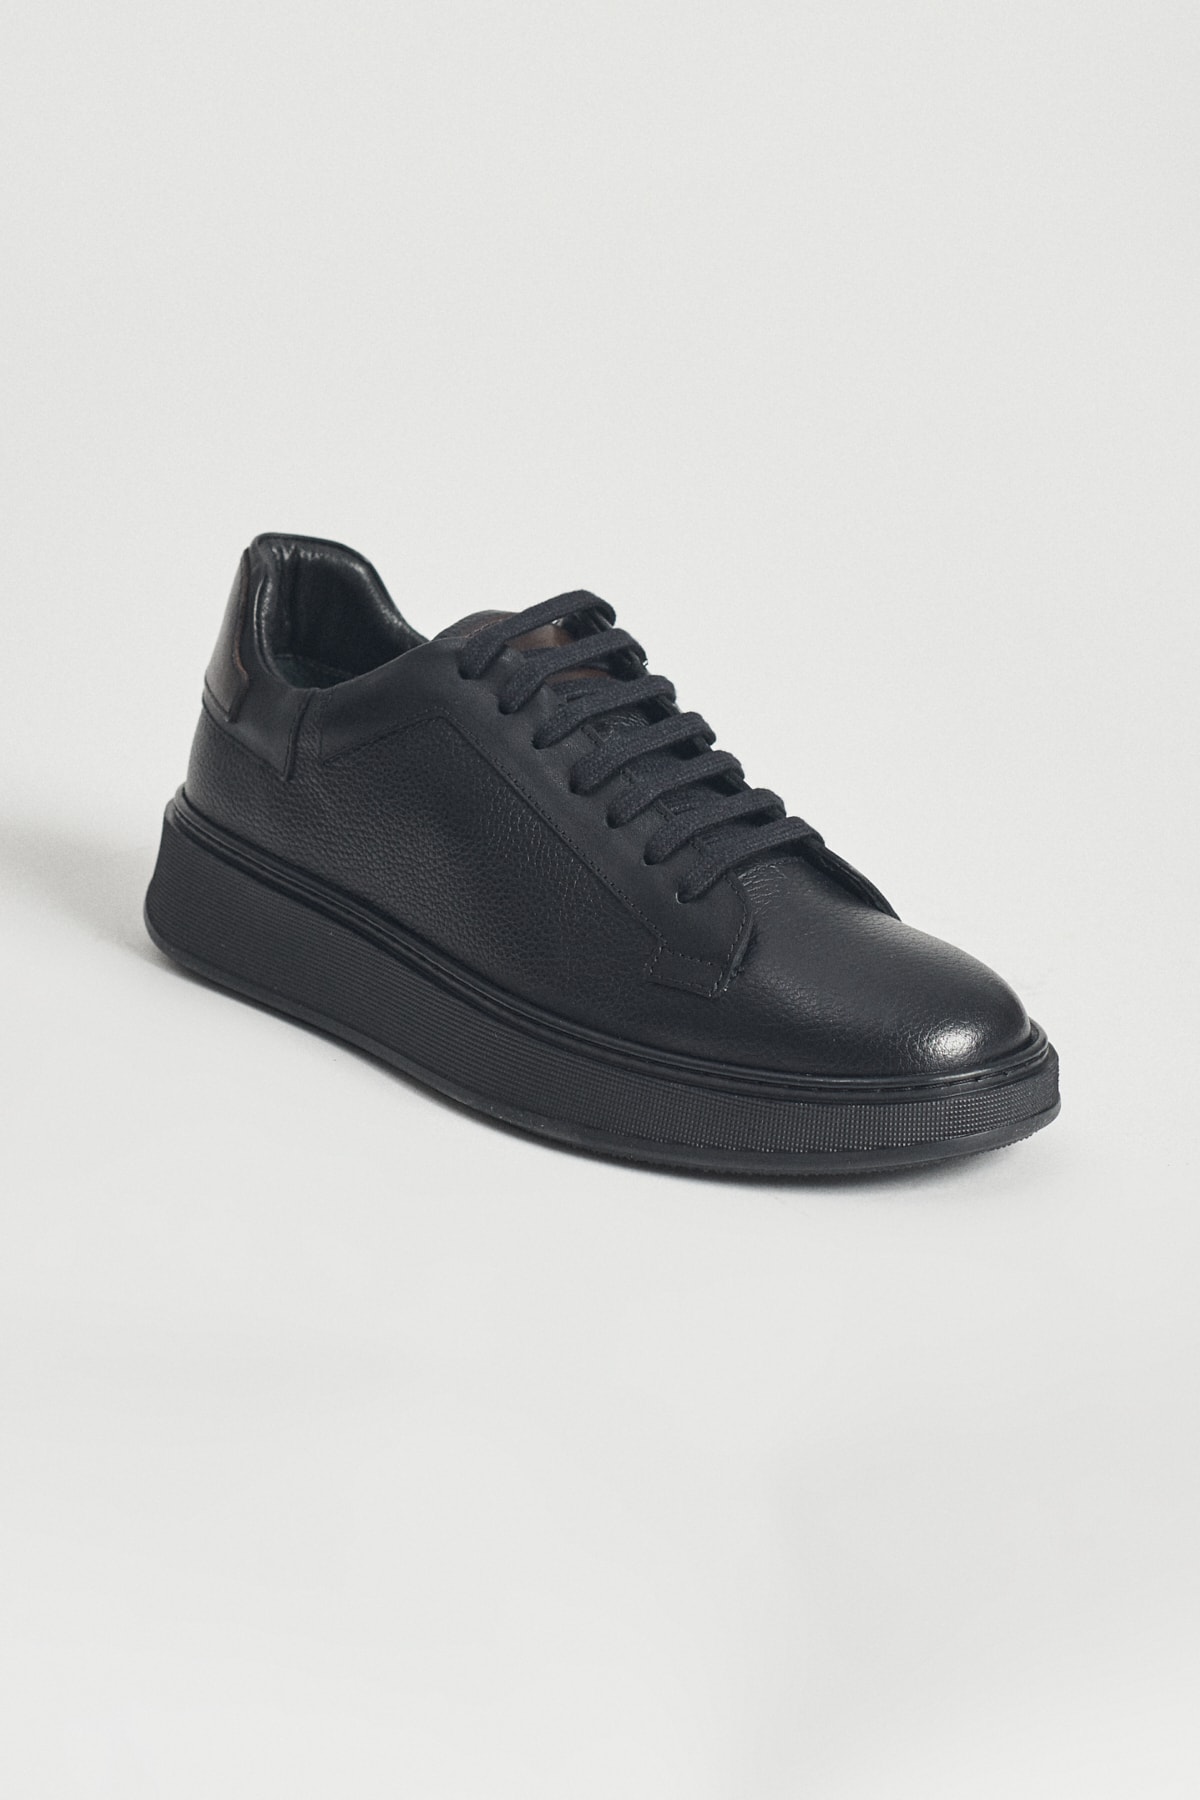 ALTINYILDIZ CLASSICS Erkek Siyah %100 Hakiki Deri Sneaker Ayakkabı ZN9131